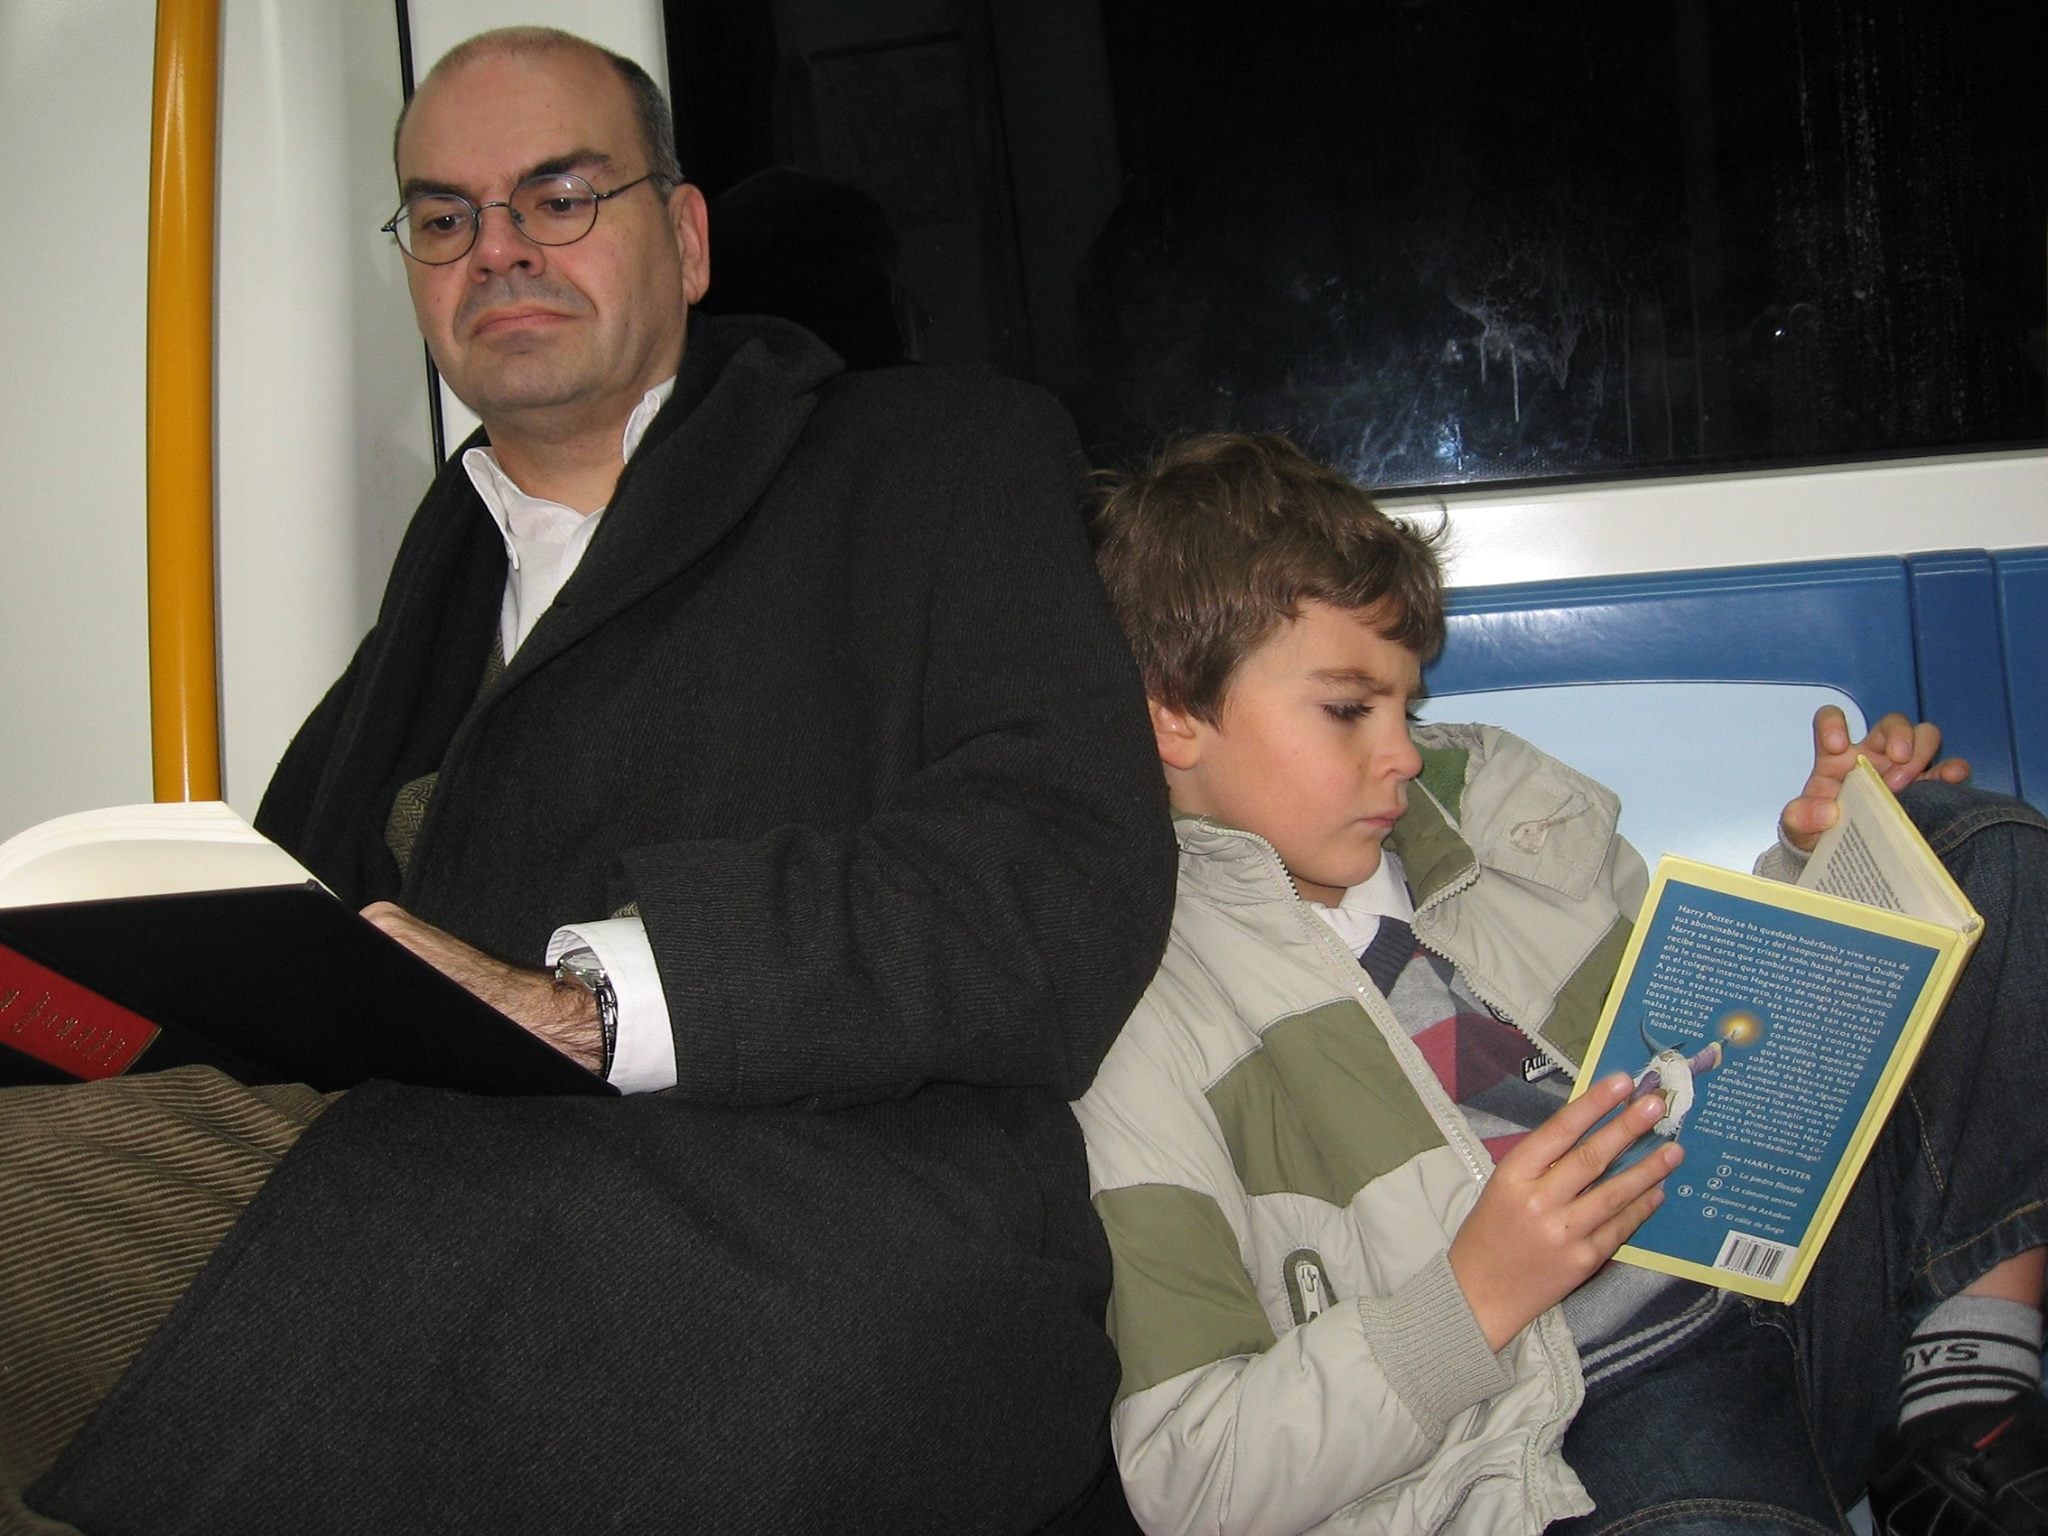 José de Segovia Barrón con su hijo en el Metro de Madrid